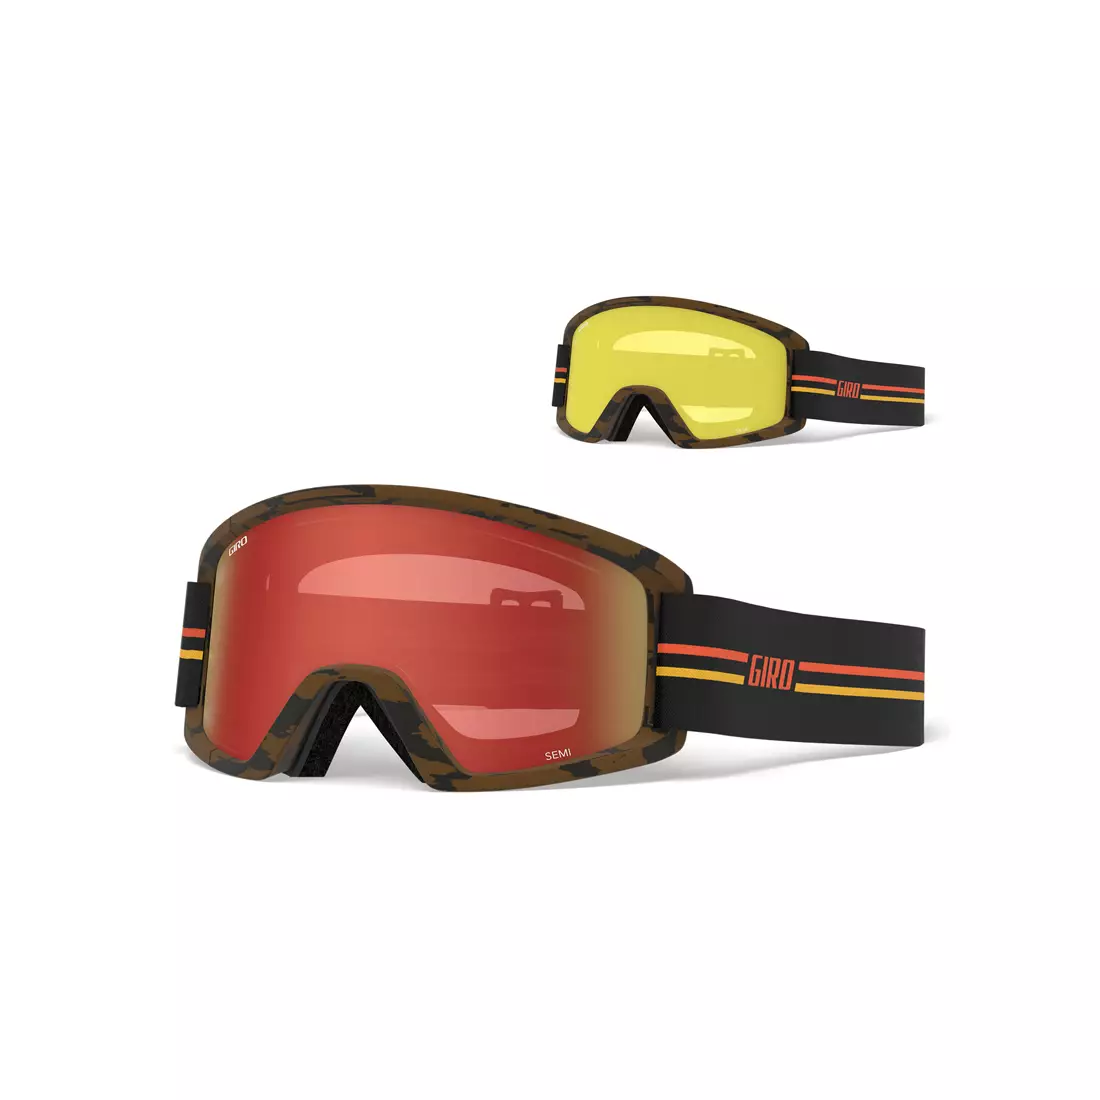 Téli sí / snowboard szemüveg GIRO SEMI GP BLACK ORANGE GR-7105387